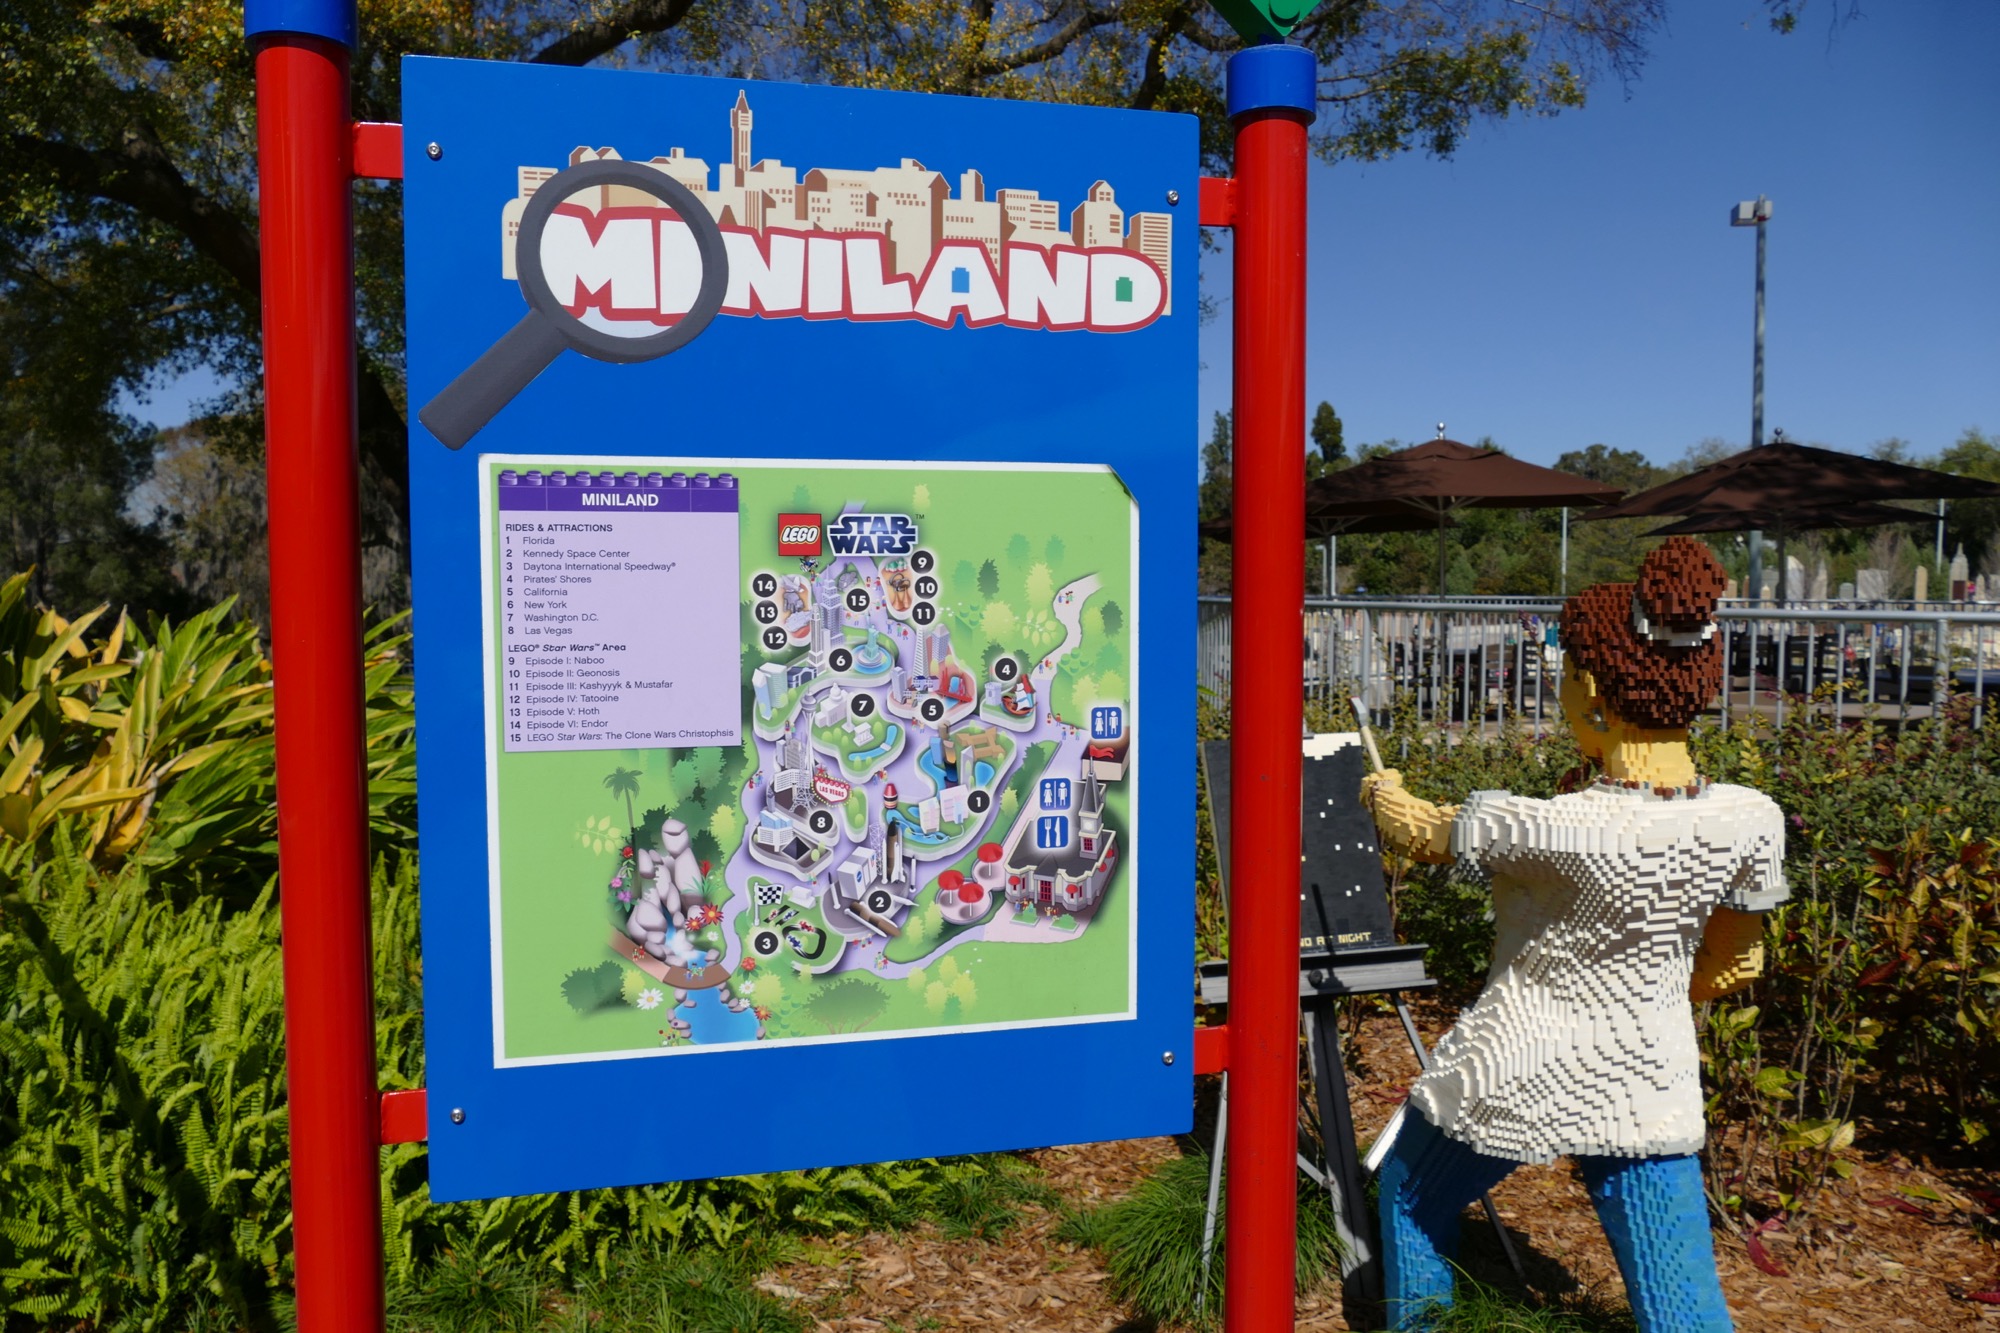 Miniland - LEGOLAND Florida